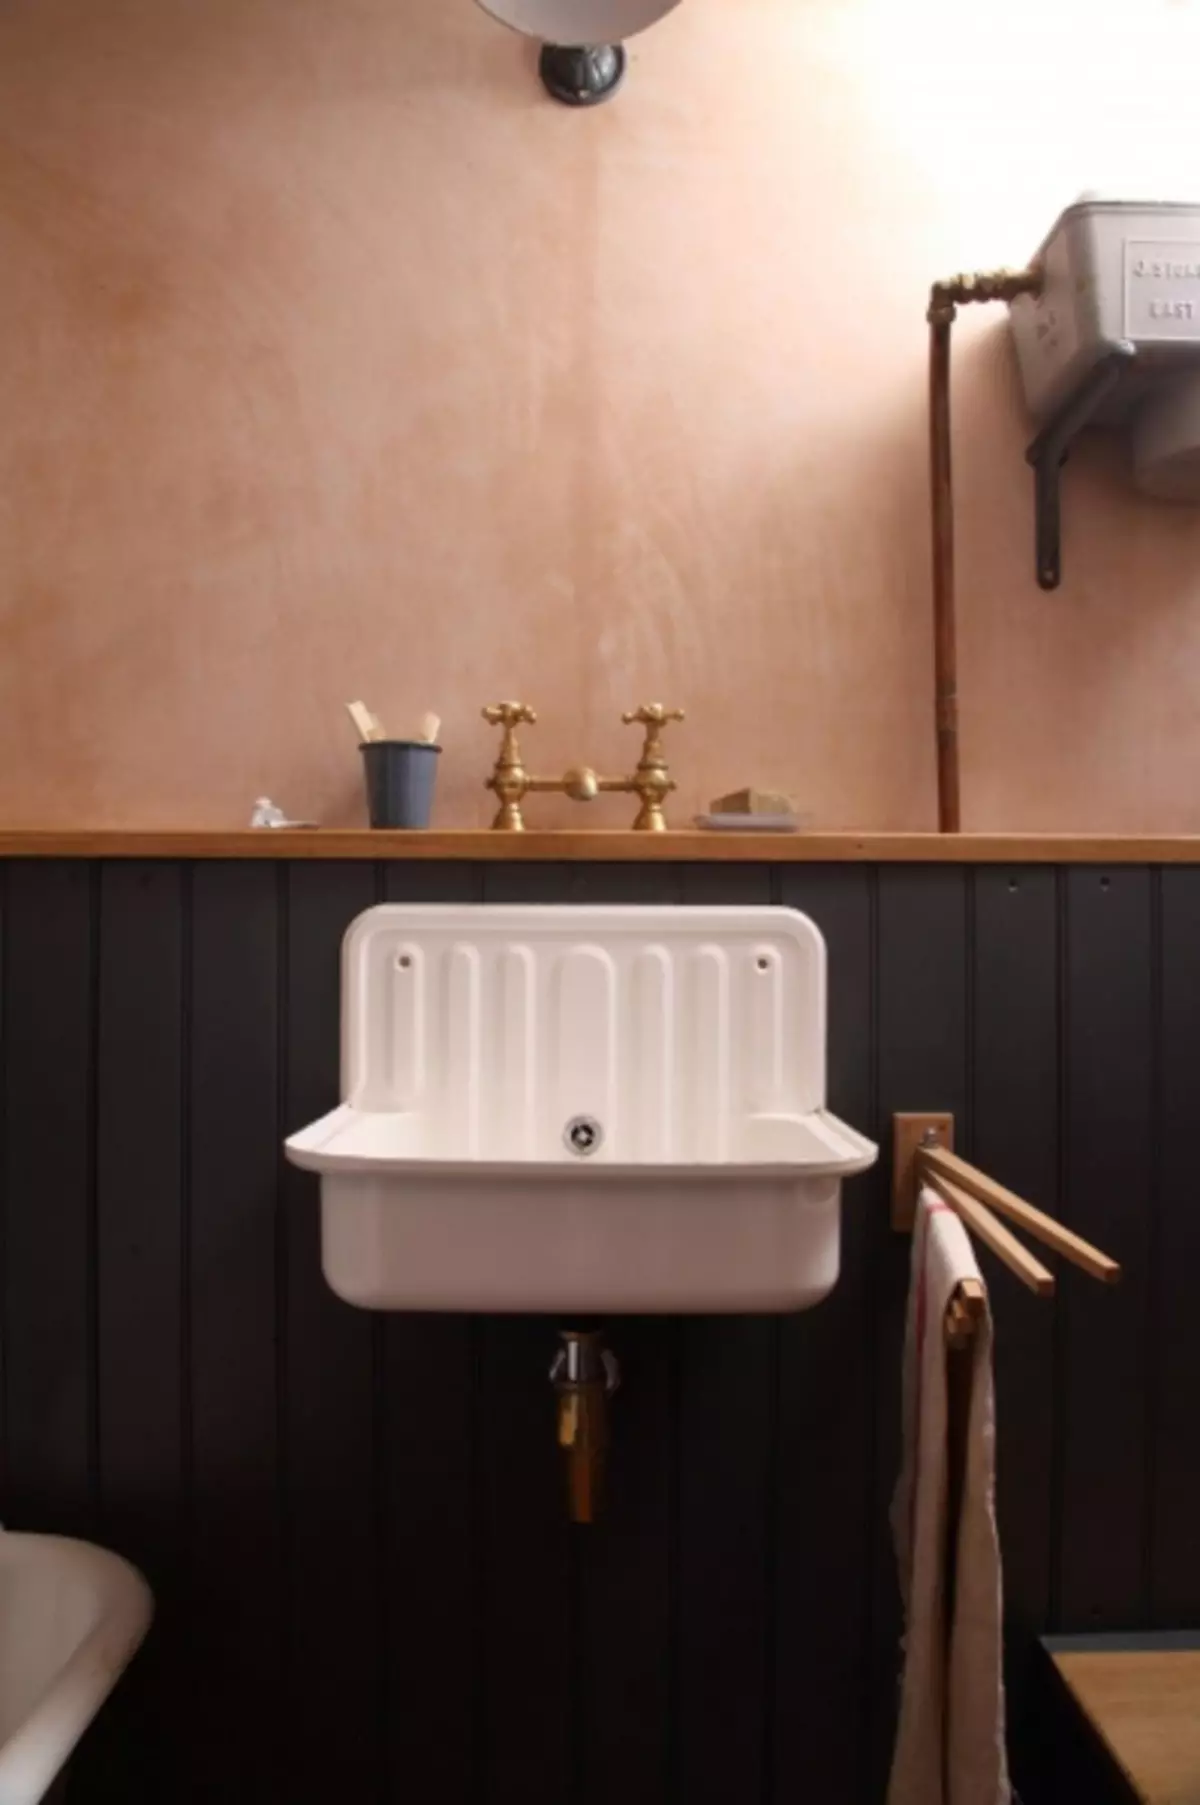 อ่างล้างมือในห้องน้ำ - 105 รูปสินค้าใหม่ที่ดีที่สุดจากแคตตาล็อก